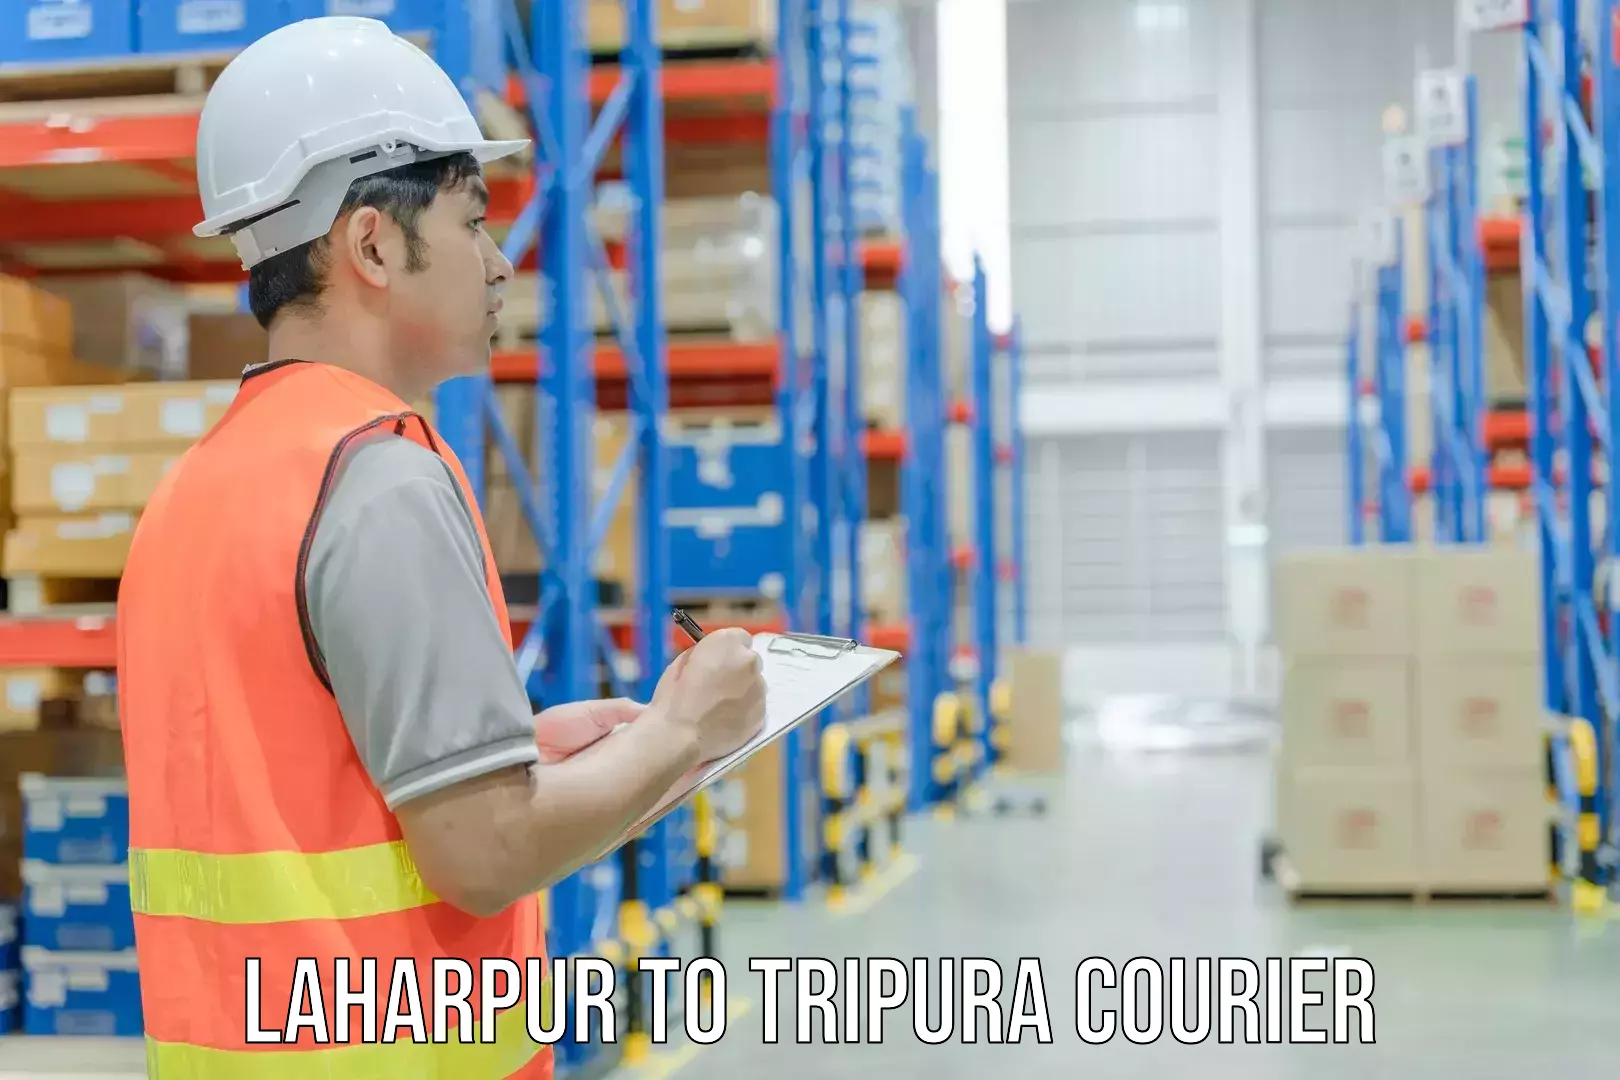 Courier dispatch services Laharpur to Amarpur